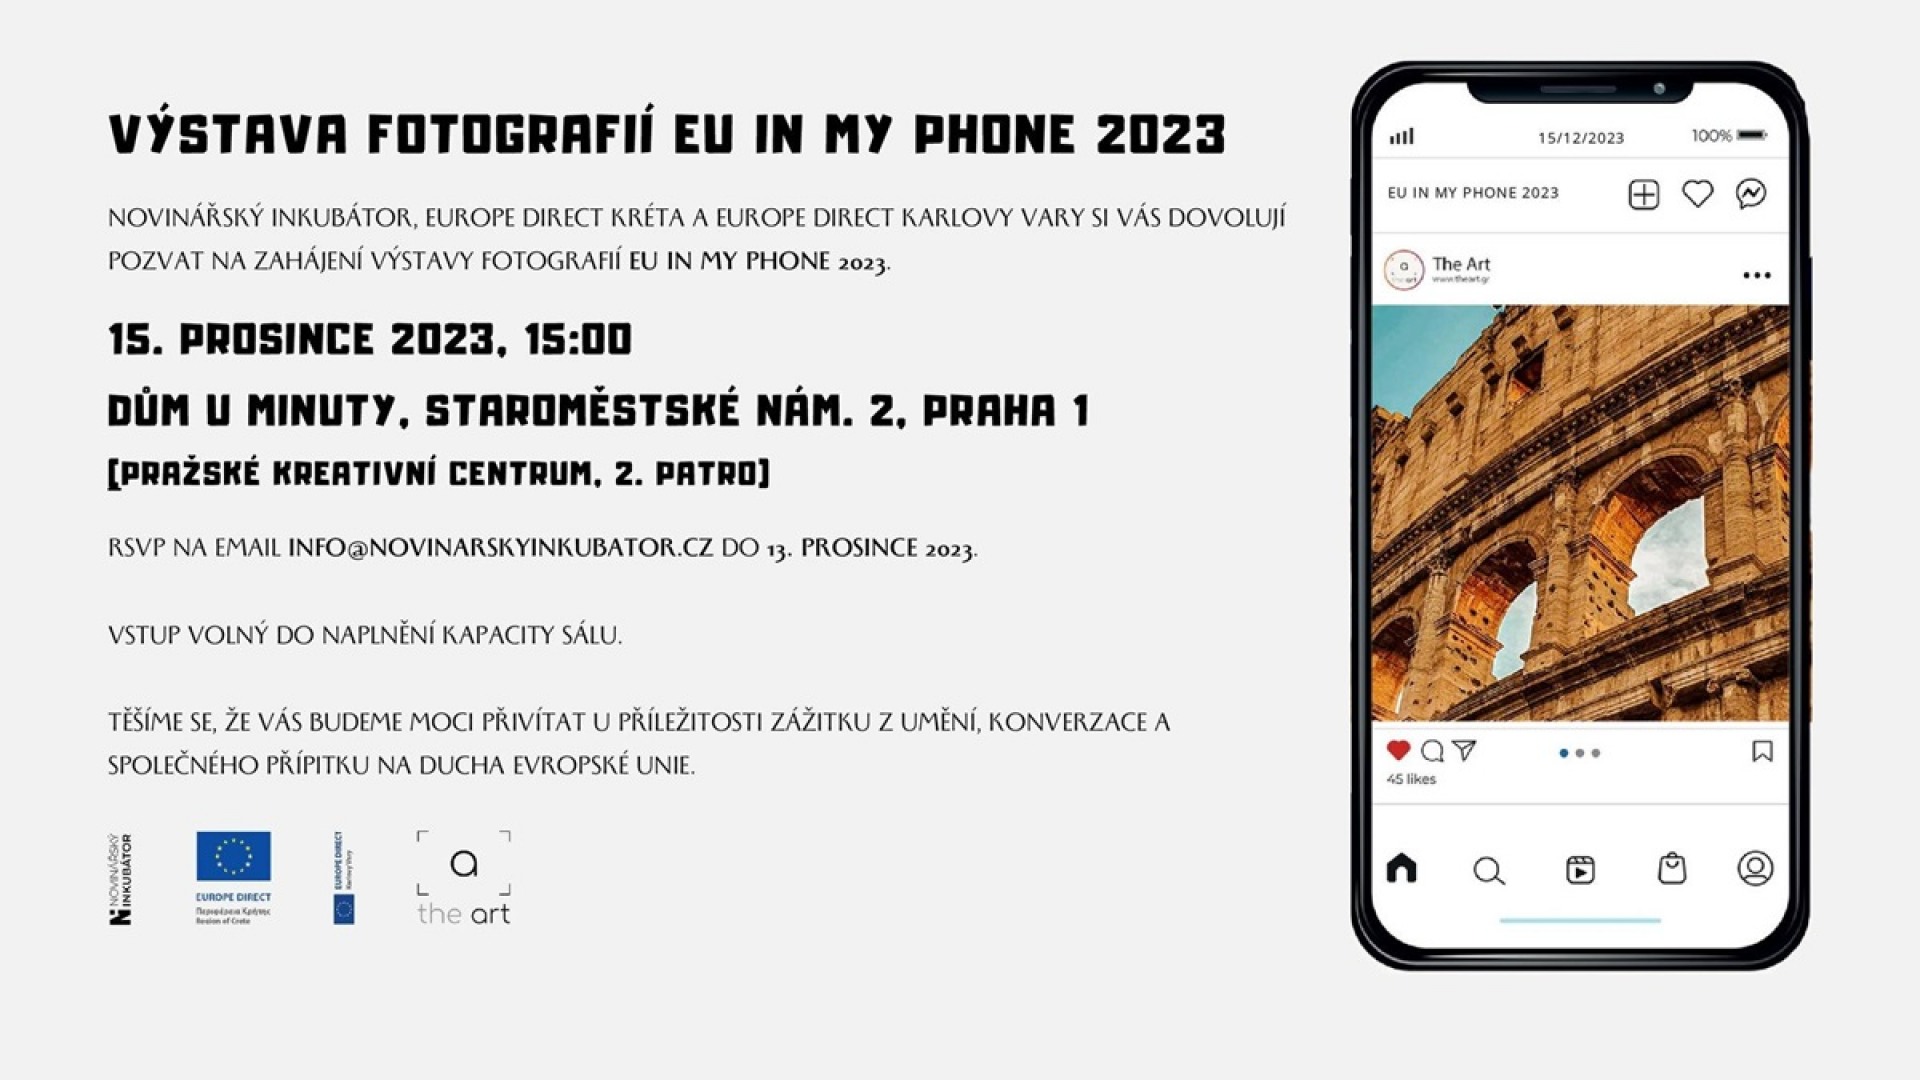 Η EU in my Phone 2023 στην Πράγα